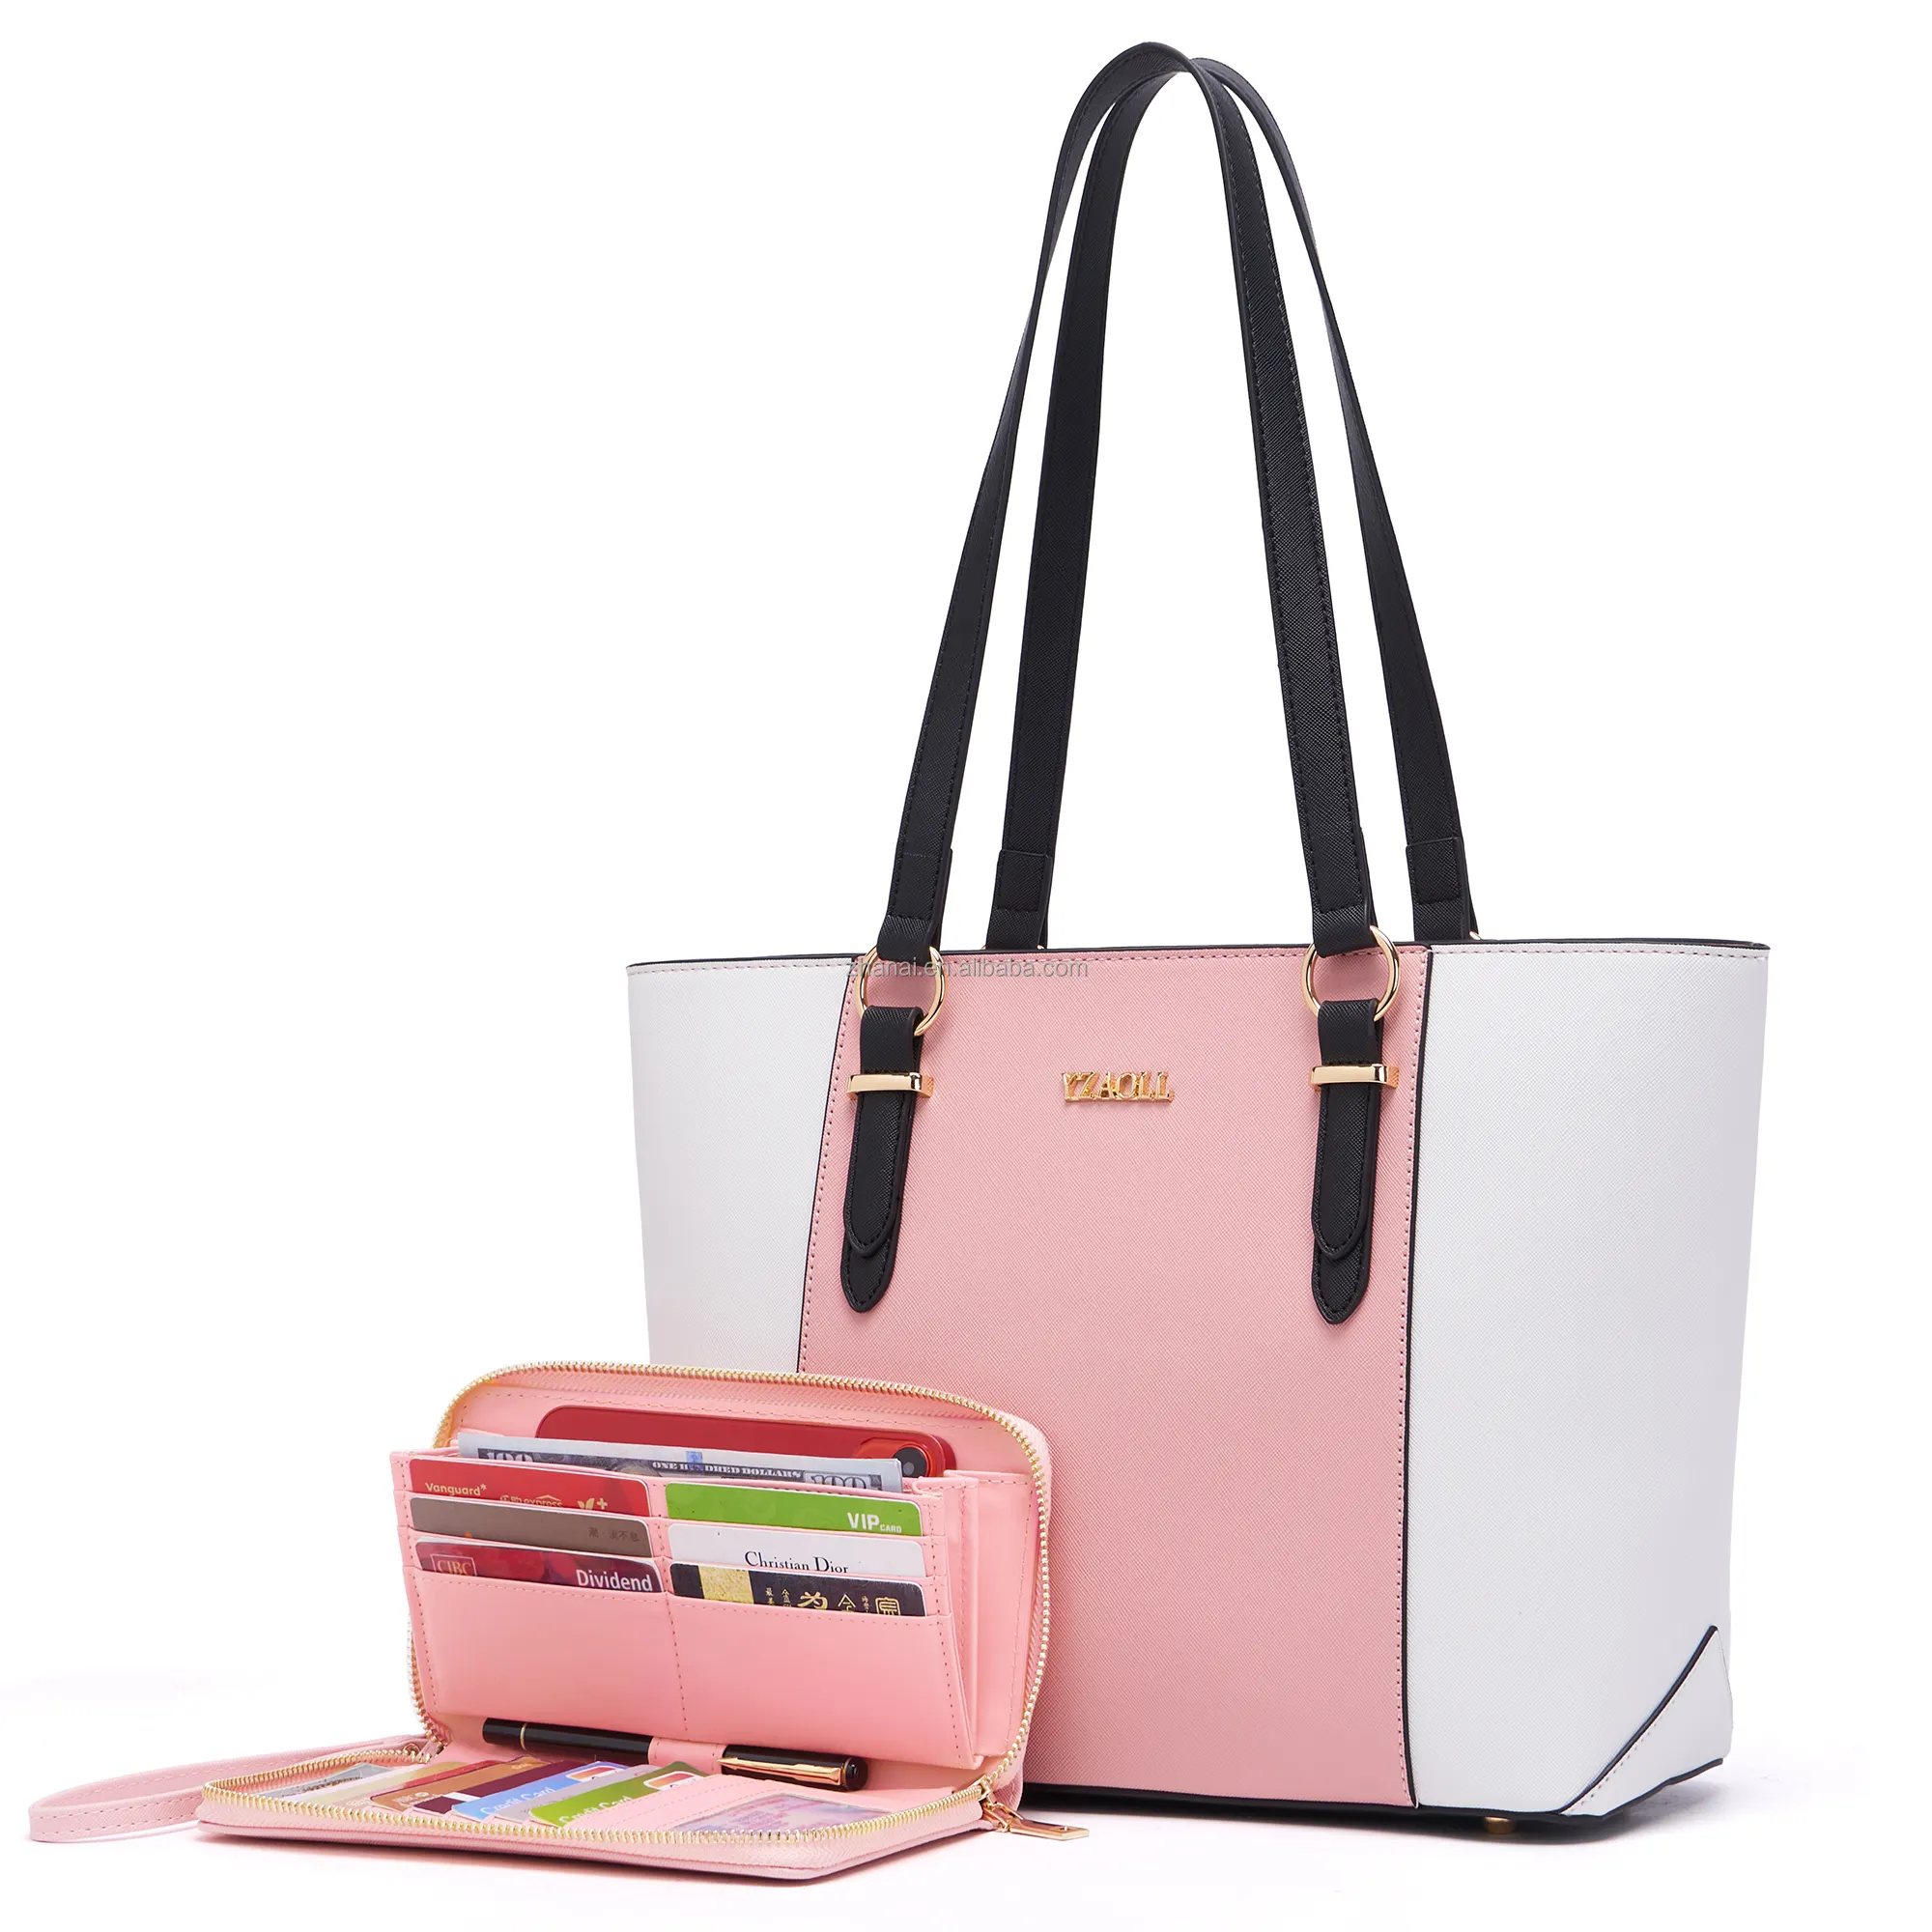 YZAOLL Manufacturer Designer Purses for Women Faux Leather Large Women's Shoulder Bags Tote Satchel Handbags Wallet set 2pcs